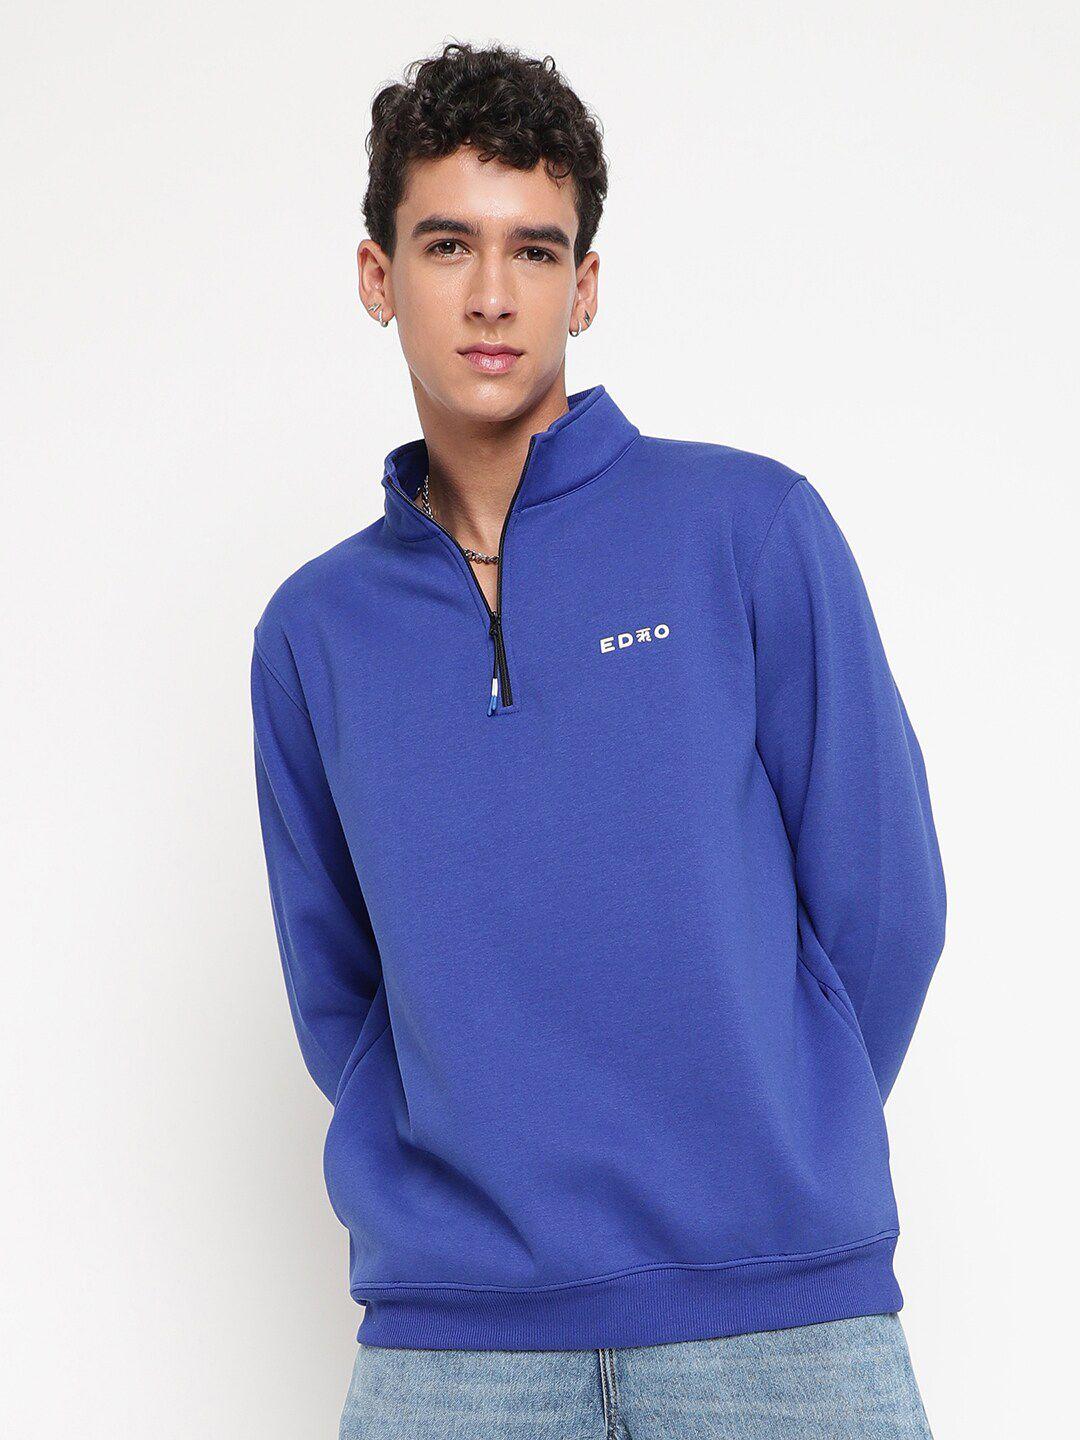 edrio-mock-collar-long-sleeve-zip-detail-woollen-pullover-sweatshirt